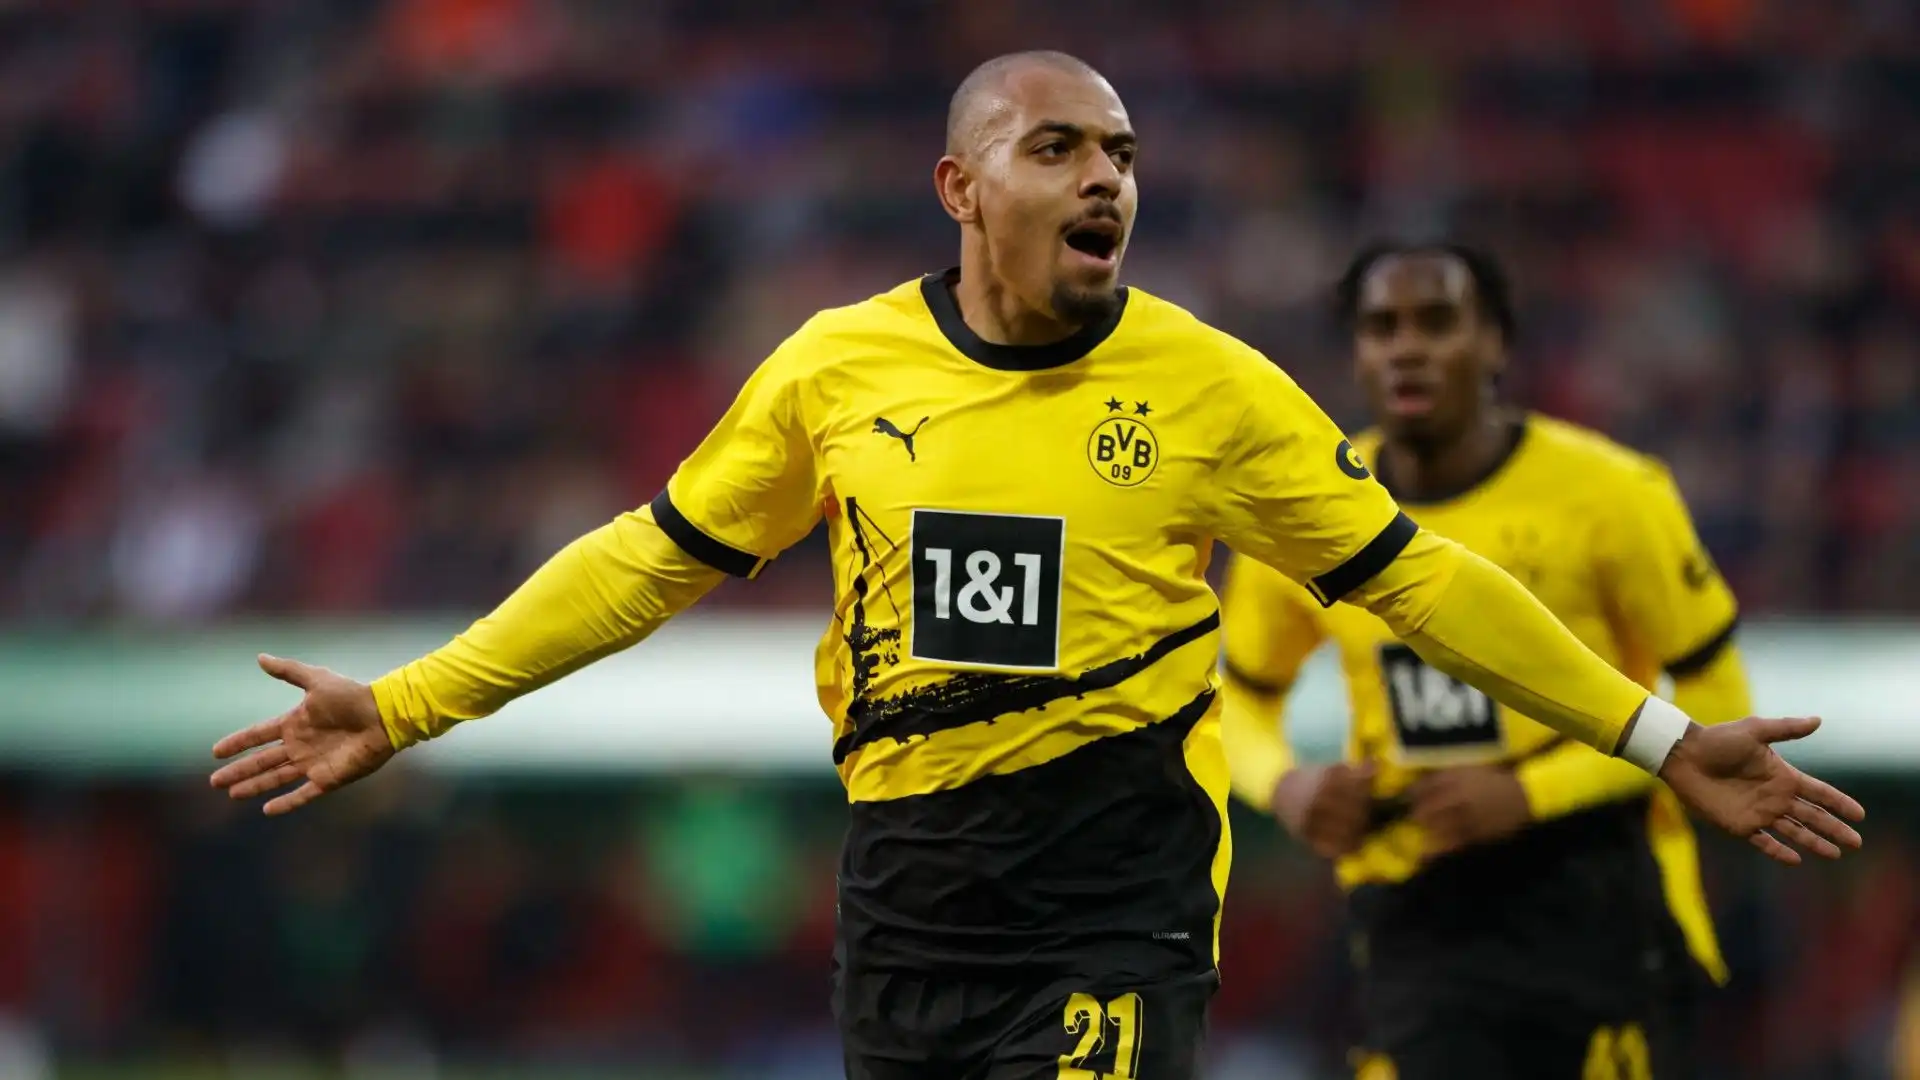 Il ds Freund sta considerando il calciatore del Borussia Dortmund come possibile acquisto estivo